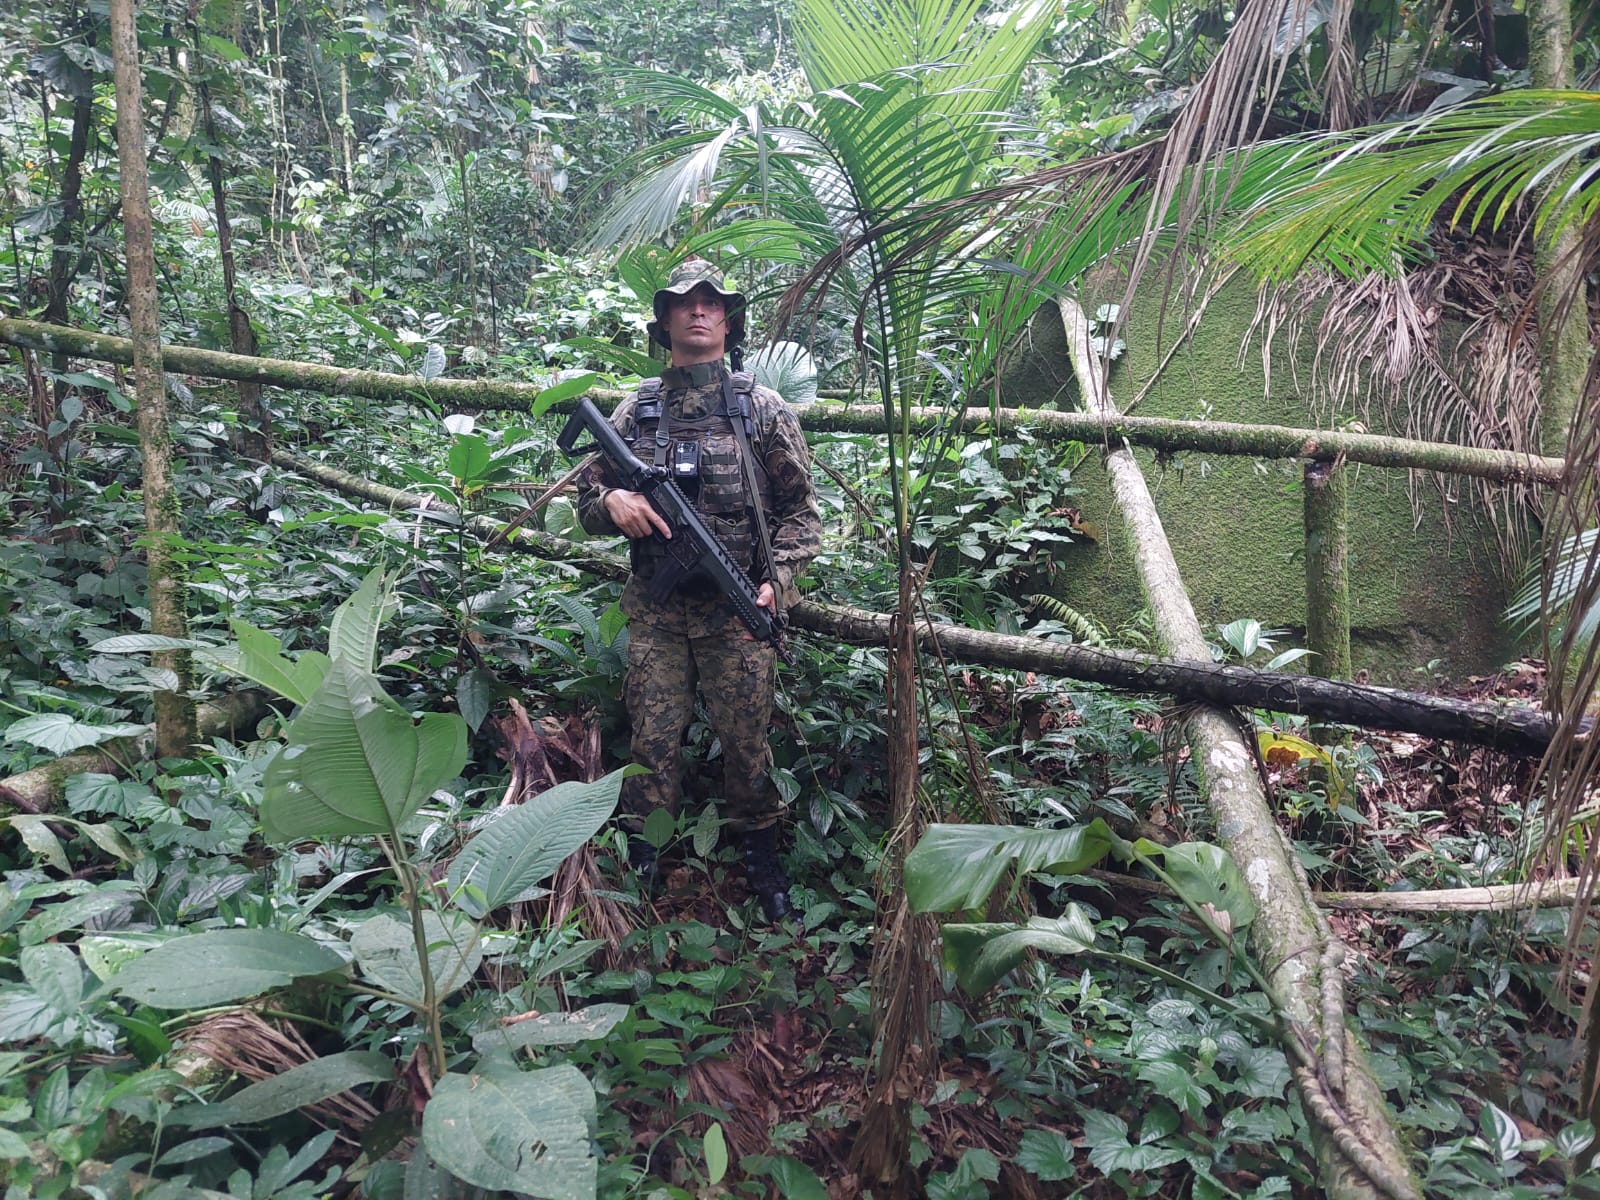 Indícios de caça ilegal de animais, desmatamento e extração de palmito jussara são encontrados dentro de unidade de conservação em Mangaratiba 